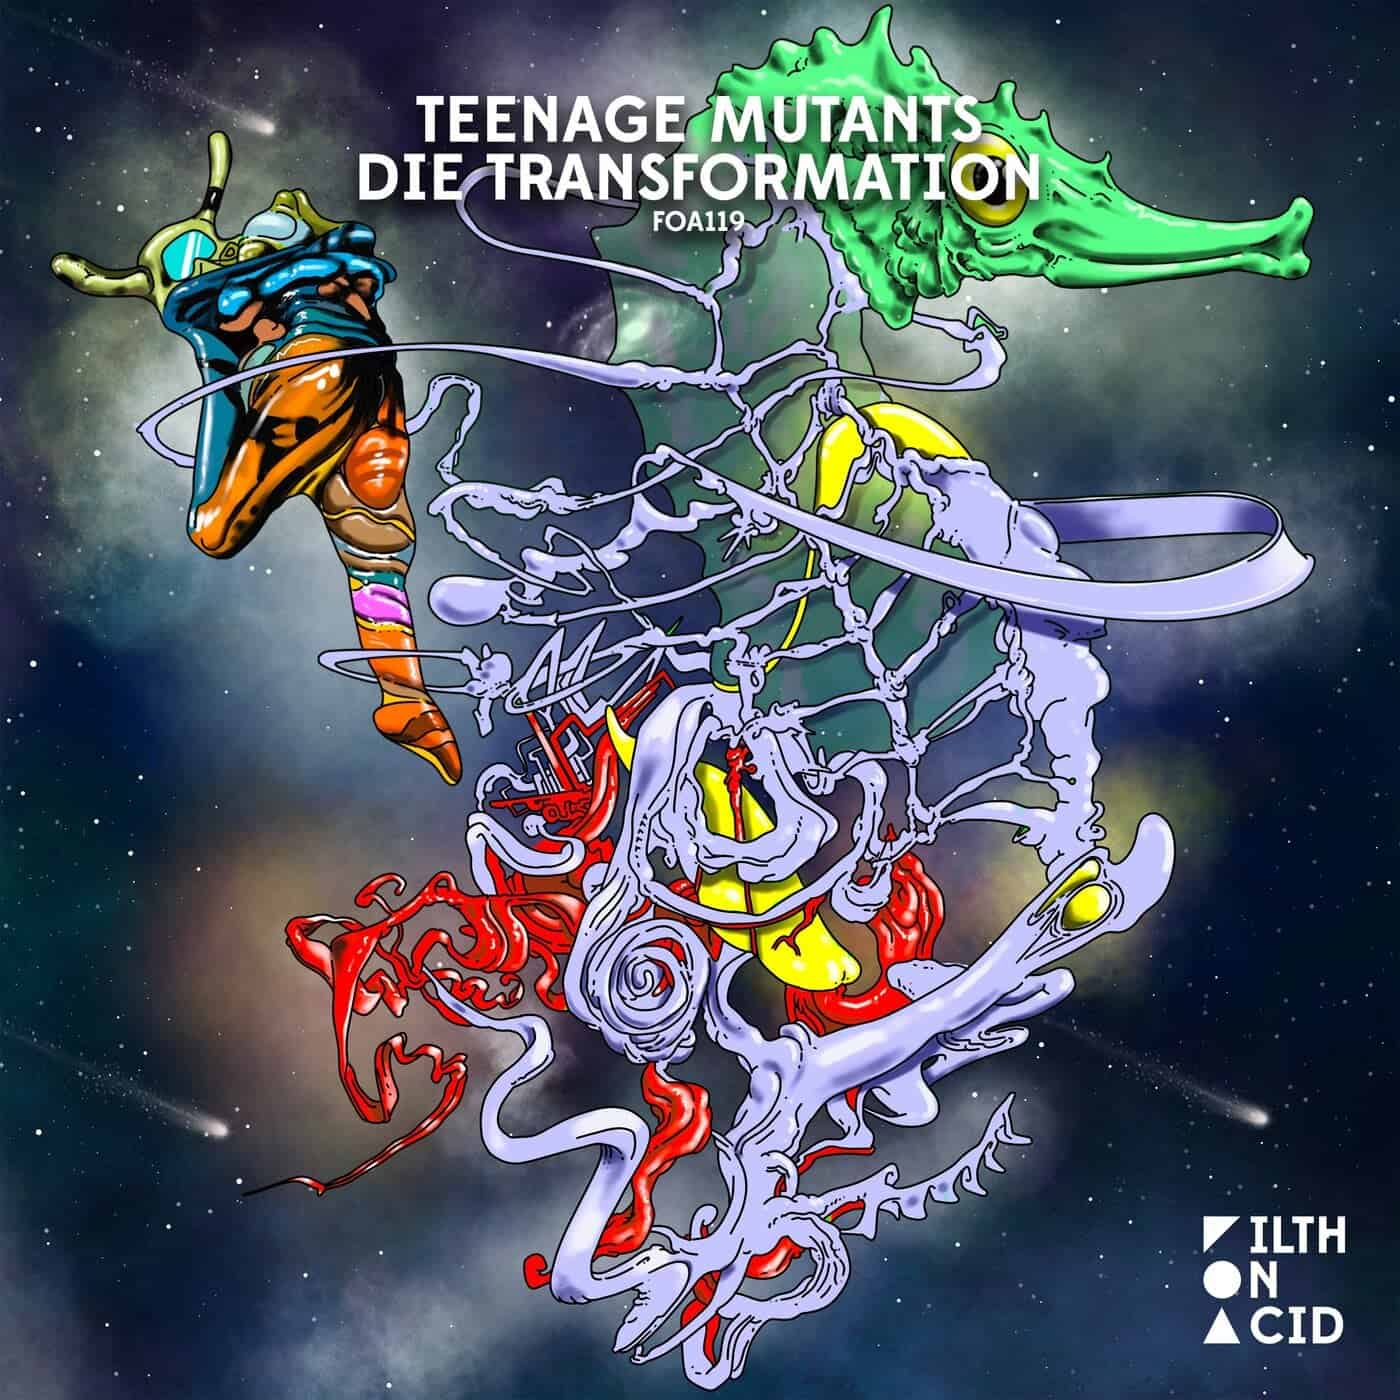 Download Teenage Mutants, Dok & Martin, Heerhorst - Die Transformation on Electrobuzz